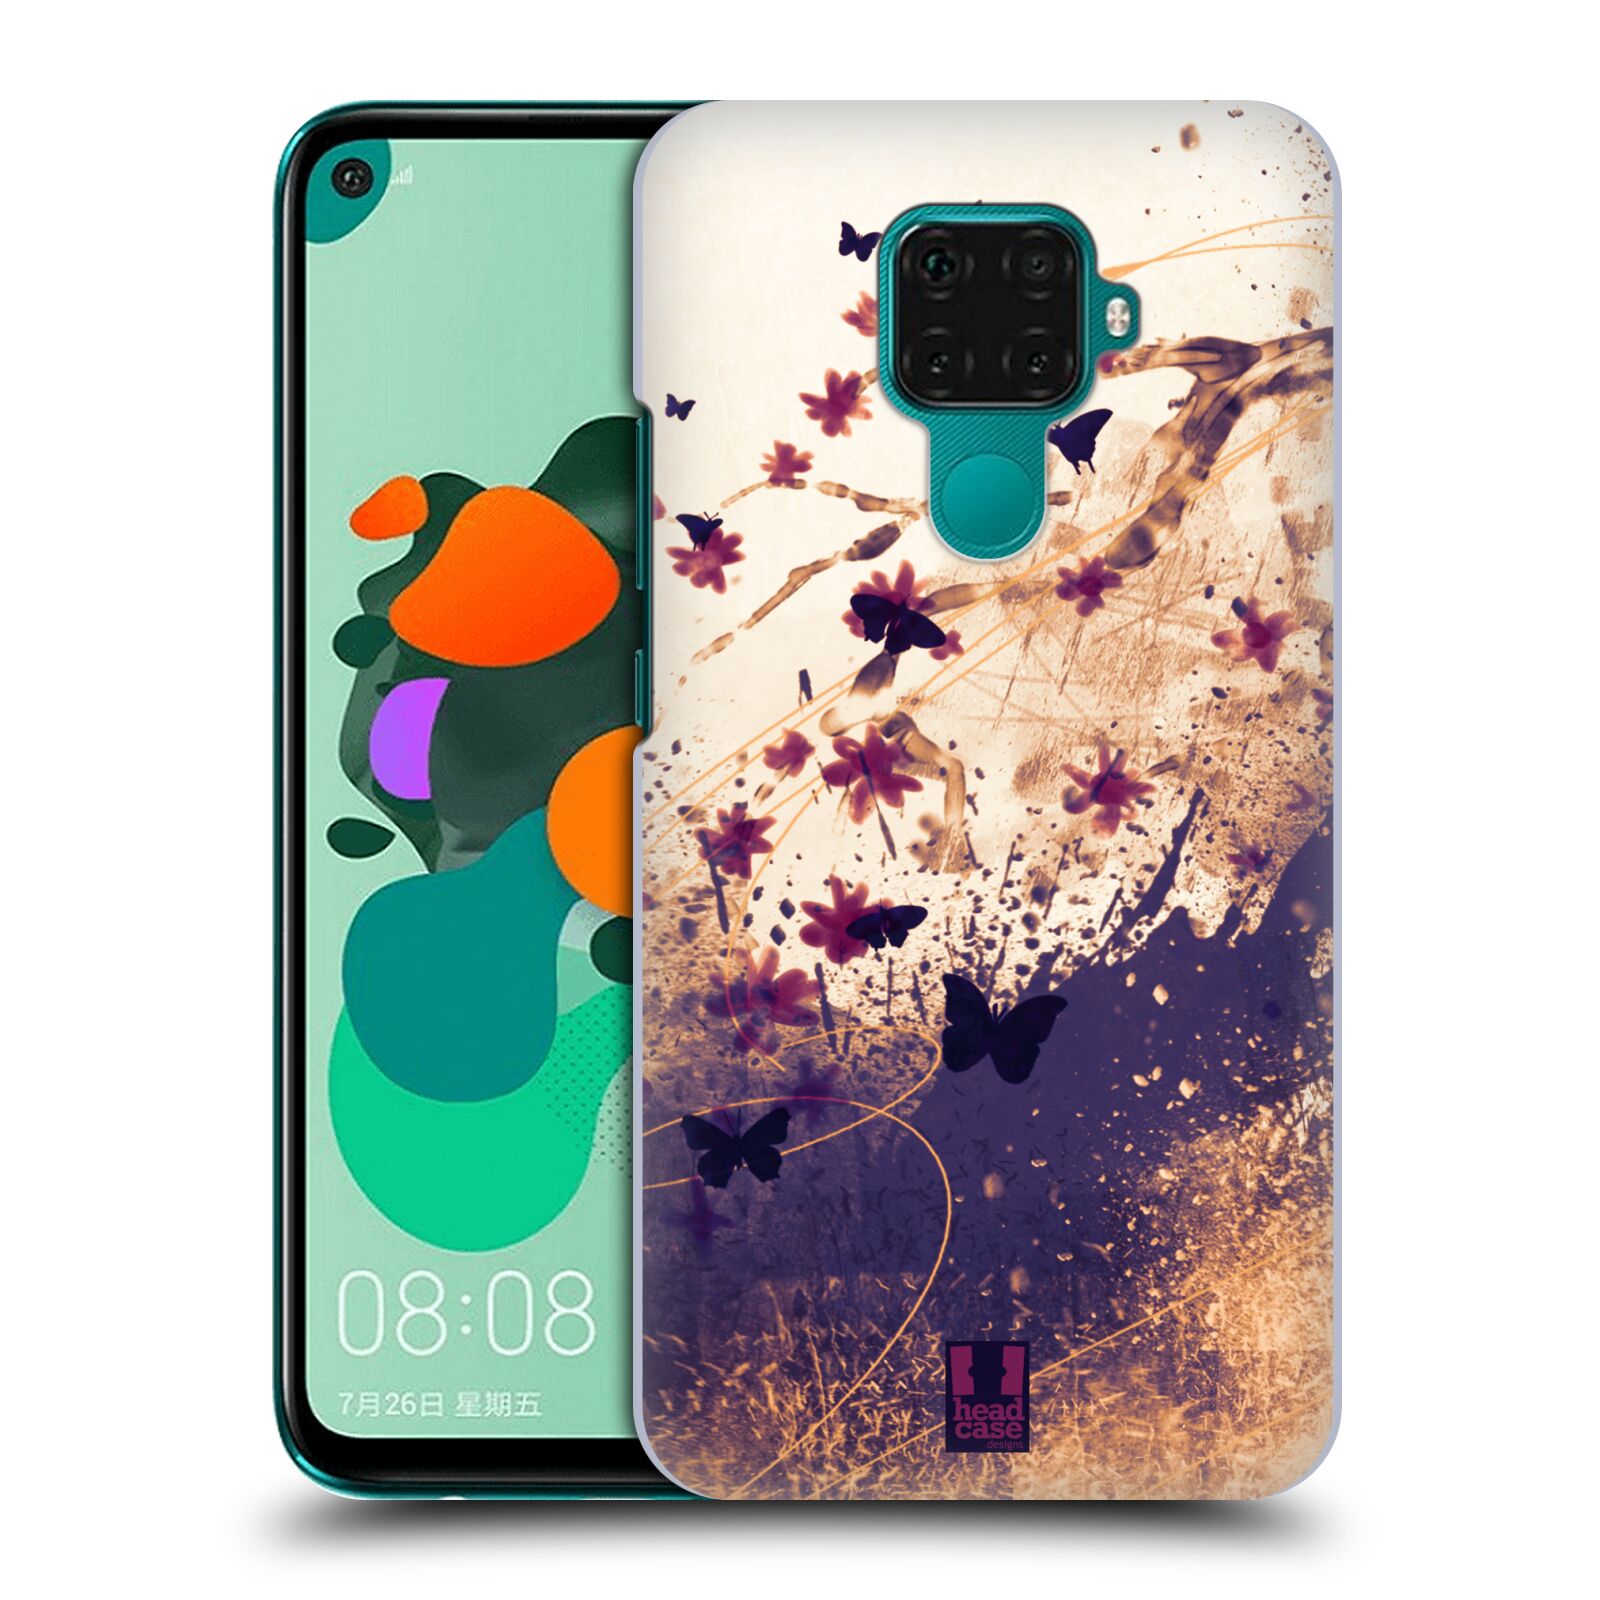 Zadní obal pro mobil Huawei Mate 30 LITE - HEAD CASE - Barevné květy a motýlci